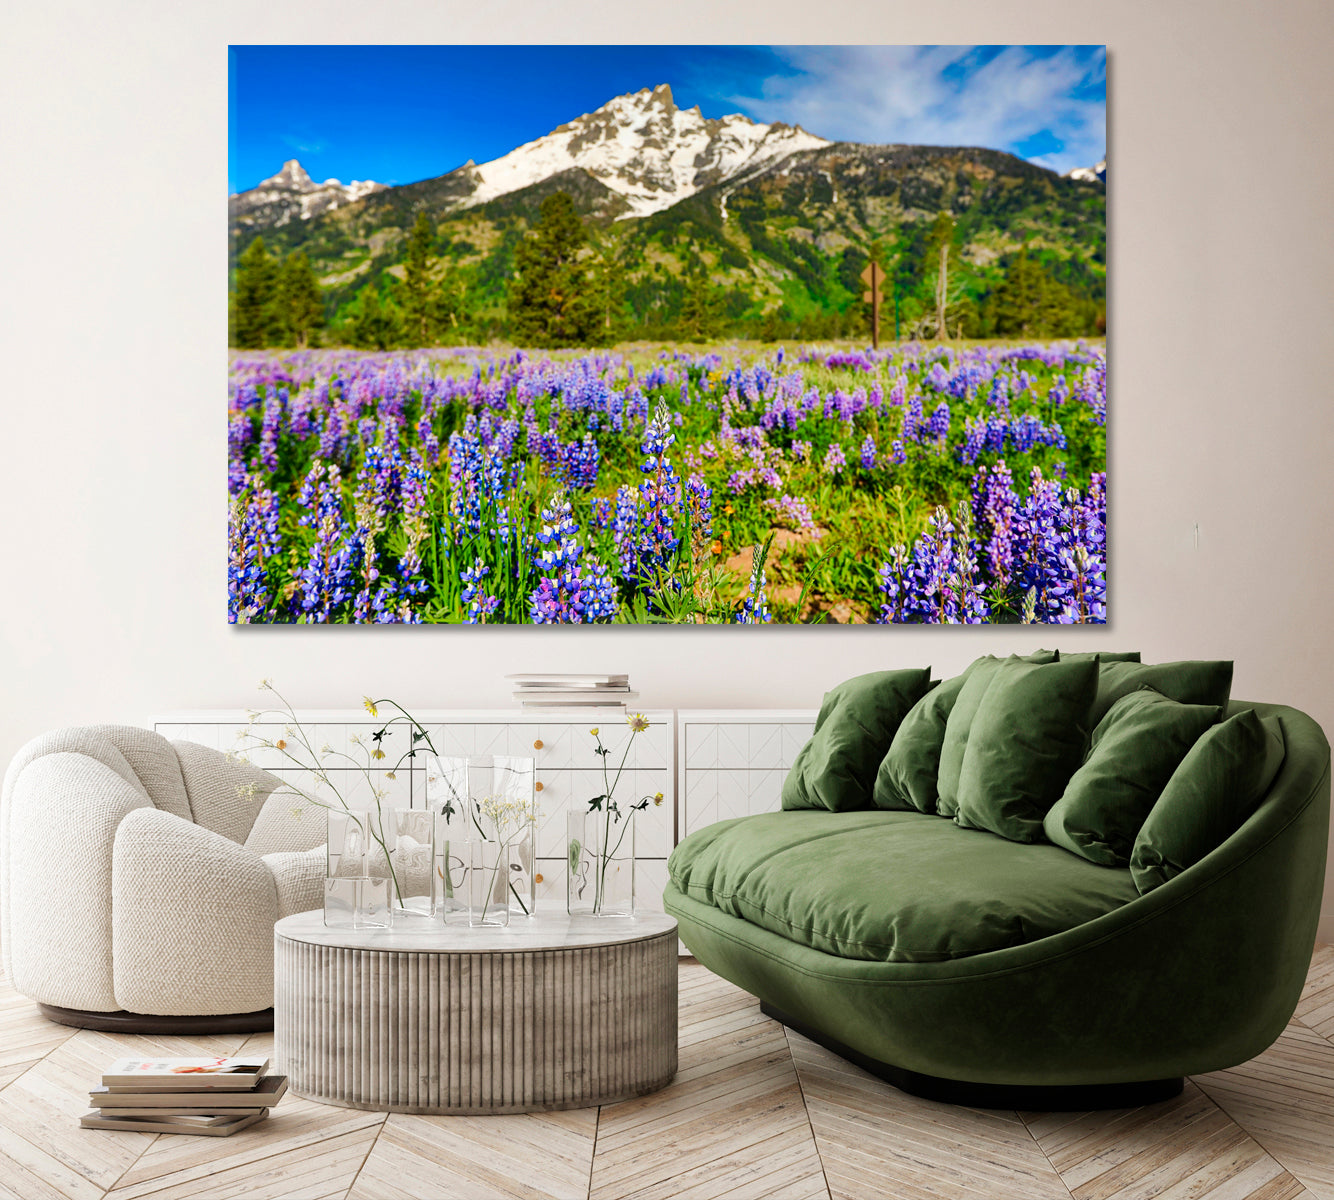 Grand Teton Mountains Jackson Wyoming Canvas Print ArtLexy 1 Panel 24"x16" inches 